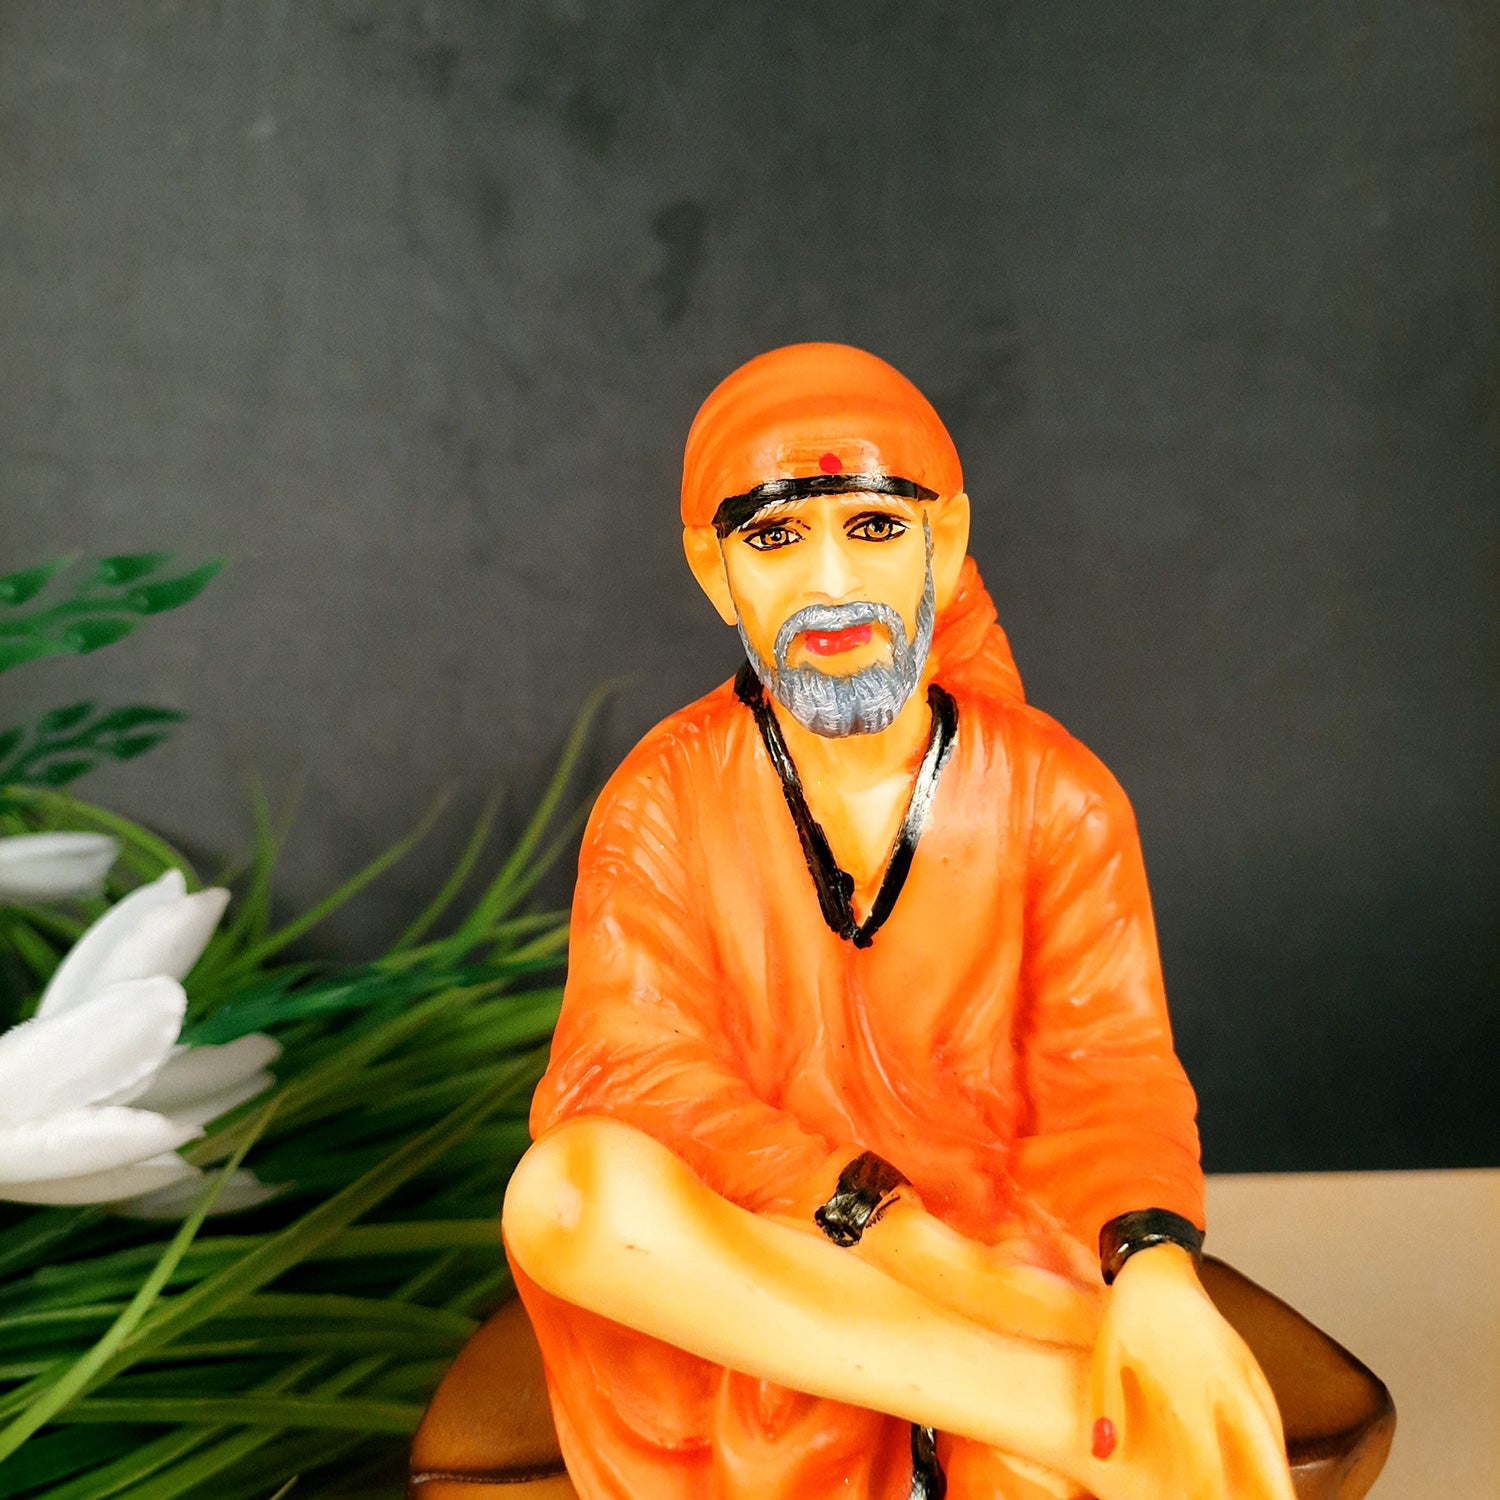 Sai Baba Murti | Shirdi Sai Baba Statue Idol - For Home, Table Decor, Office & Gifts - 9 Inch - apkamart